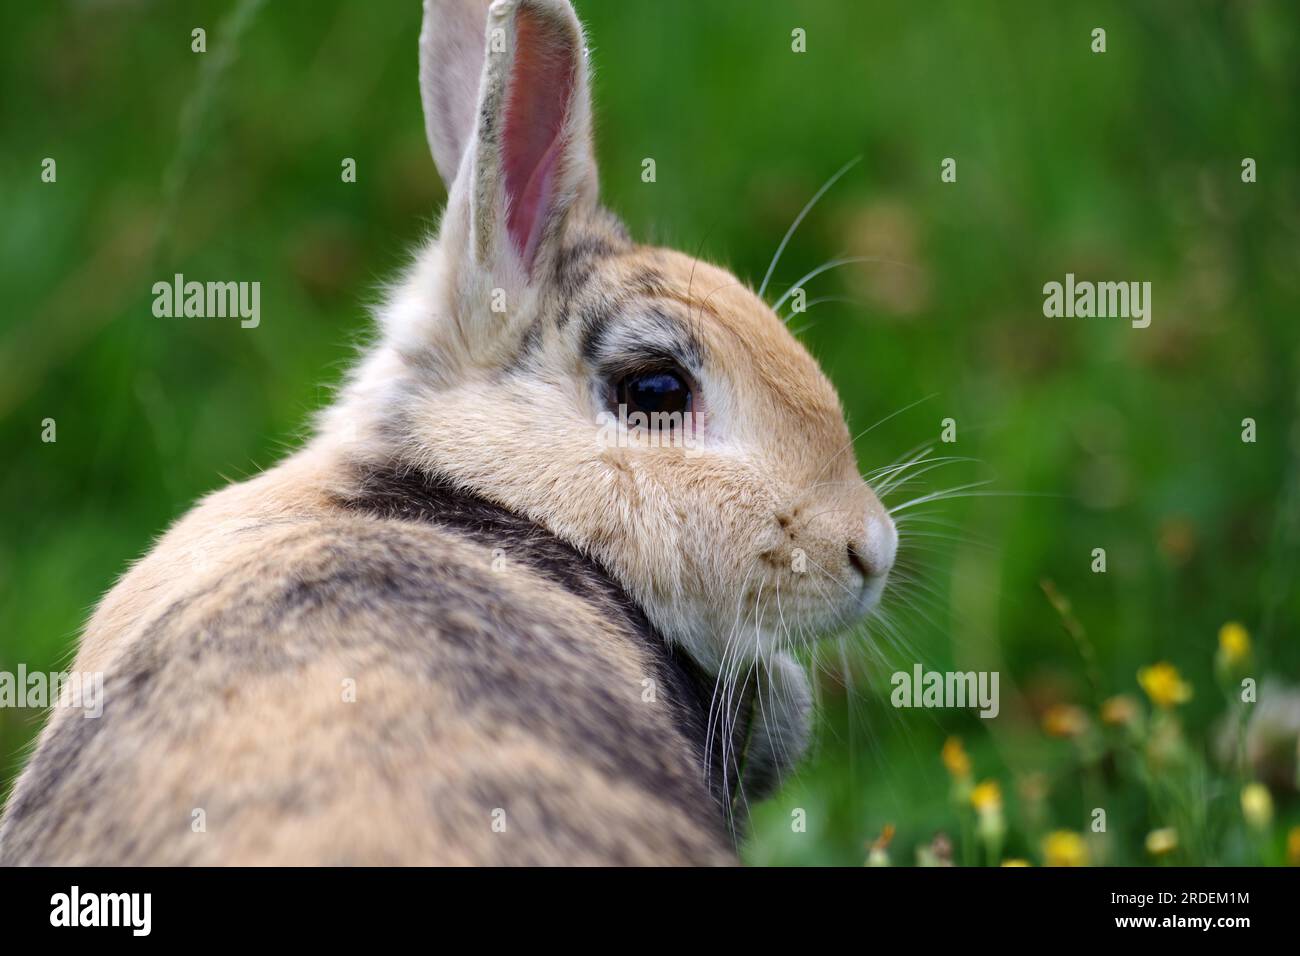 Porträt, Kaninchen, Kopf, Tier, Fell, Garten, Gras, Nahaufnahme des Seitenprofils eines braunen Hauskaninchens. Das Tier sitzt im hohen Gras Stockfoto